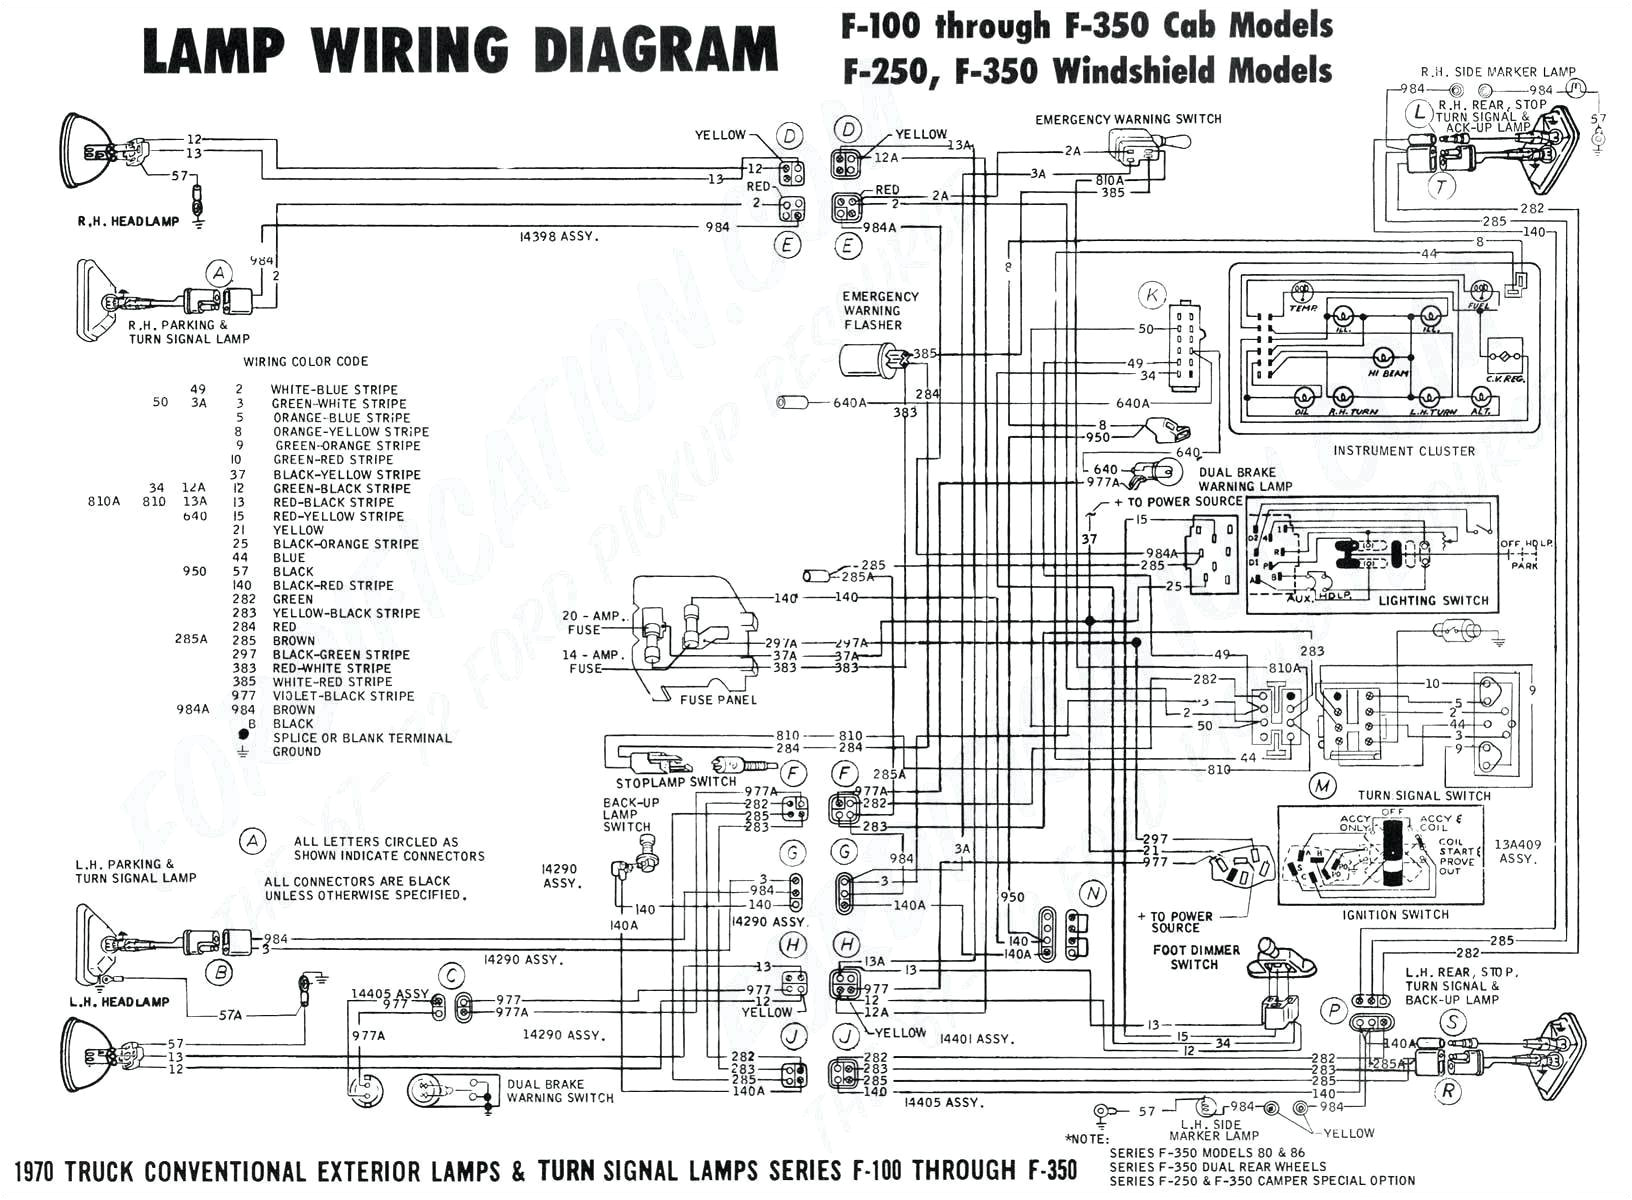 Wiring Diagram for Carolina Skiff Wiring Diagram for Carolina Skiff Unique Ls3 Alternator Wiring